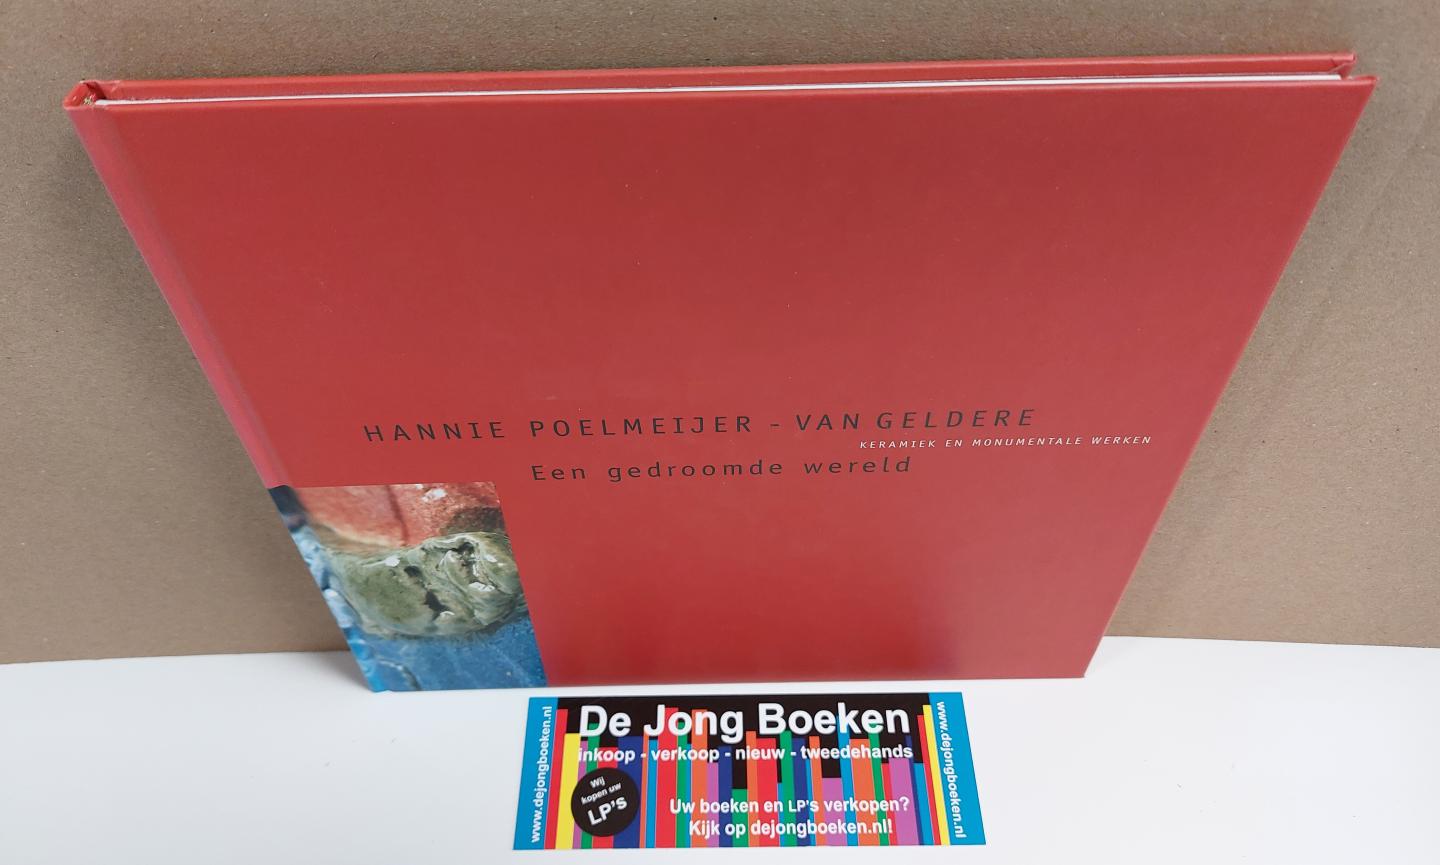 Heijnen, Henk - Hannie Poelmeijer - van Geldere: Een gedroomde wereld (Keramiek en monumentale werken)